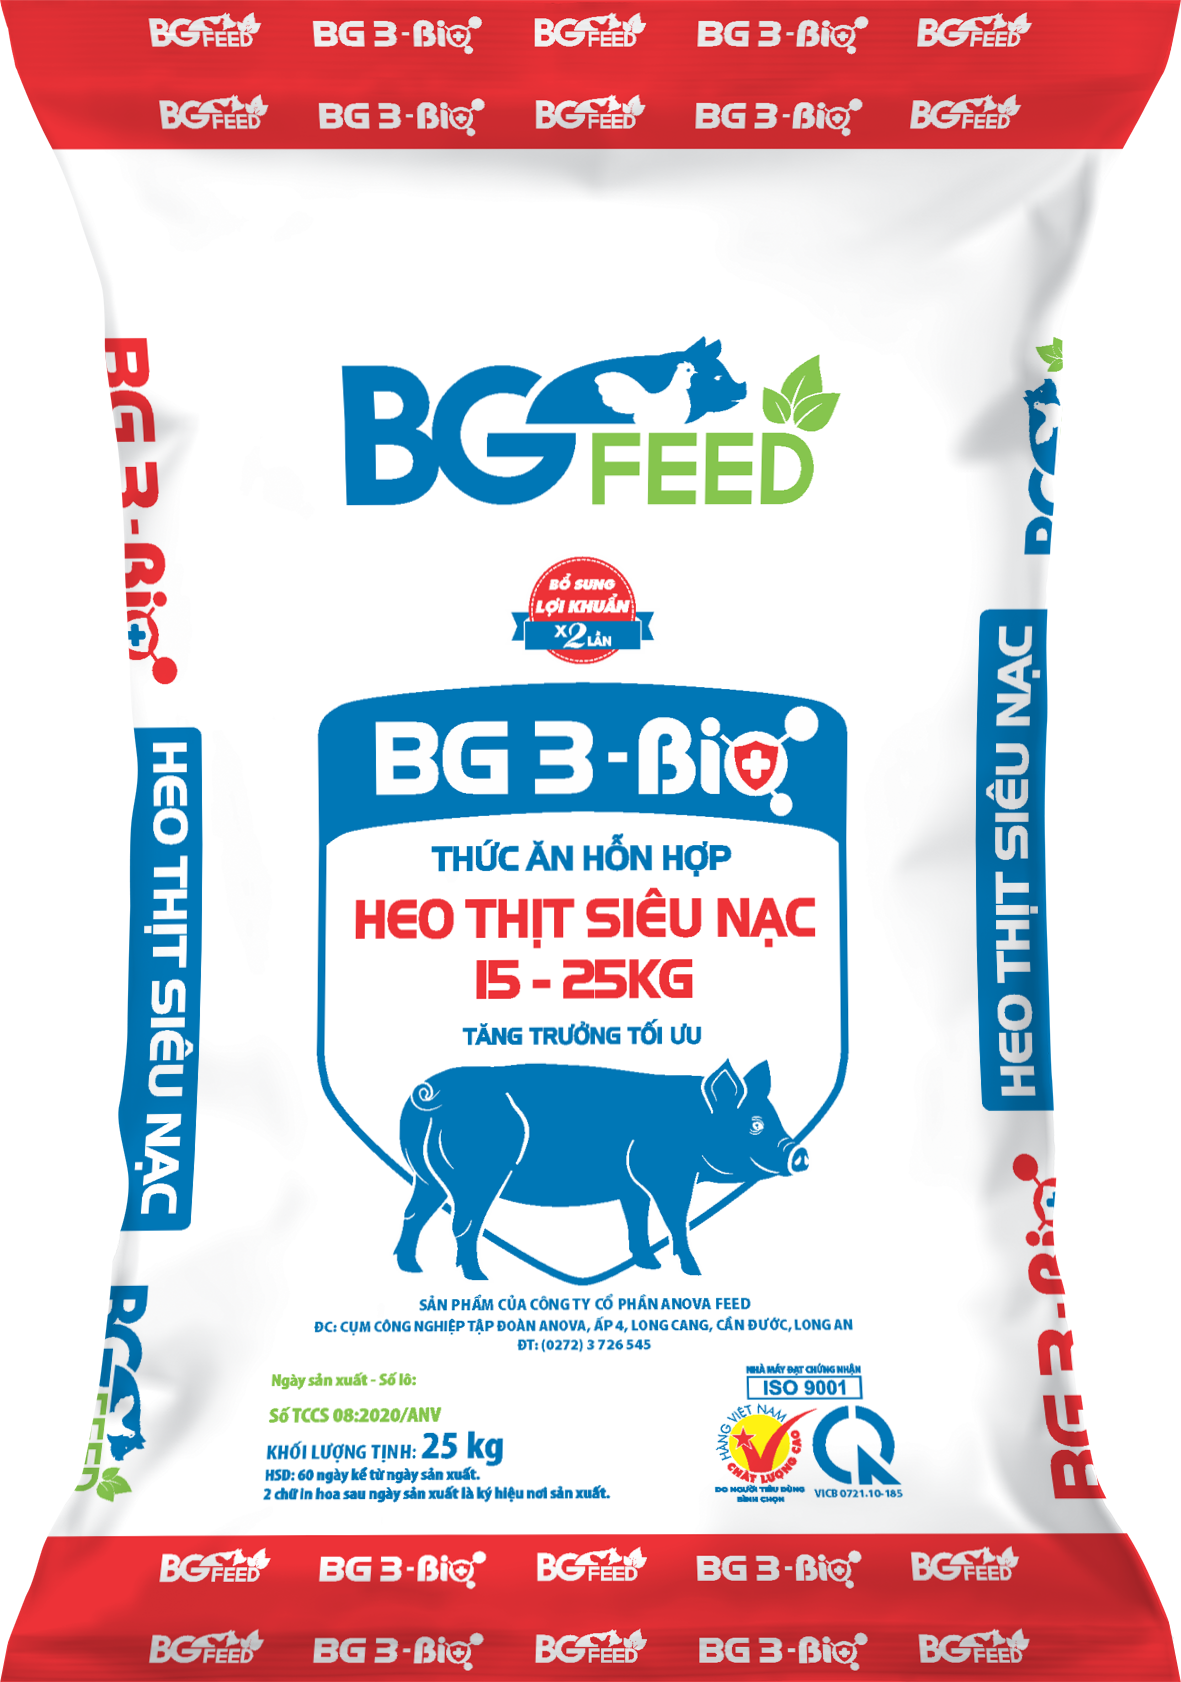 Thức ăn hỗn hợp HEO THỊT SIÊU NẠC 15 - 25kg BG 3 - Bio